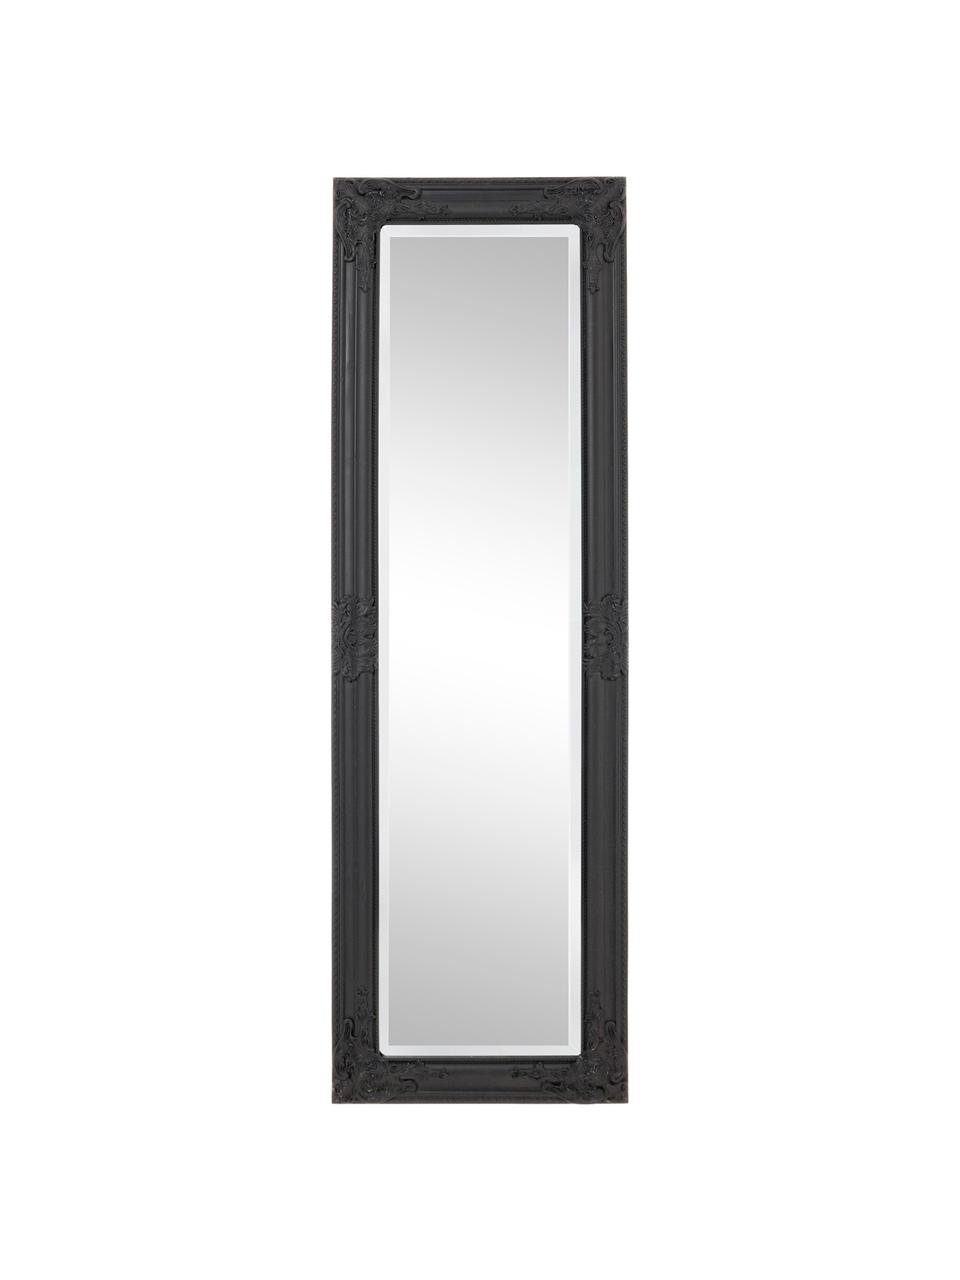 Čtvercové nástěnné zrcadlo s černým dřevěným rámem Miro, Černá, Š 42 cm, V 132 cm